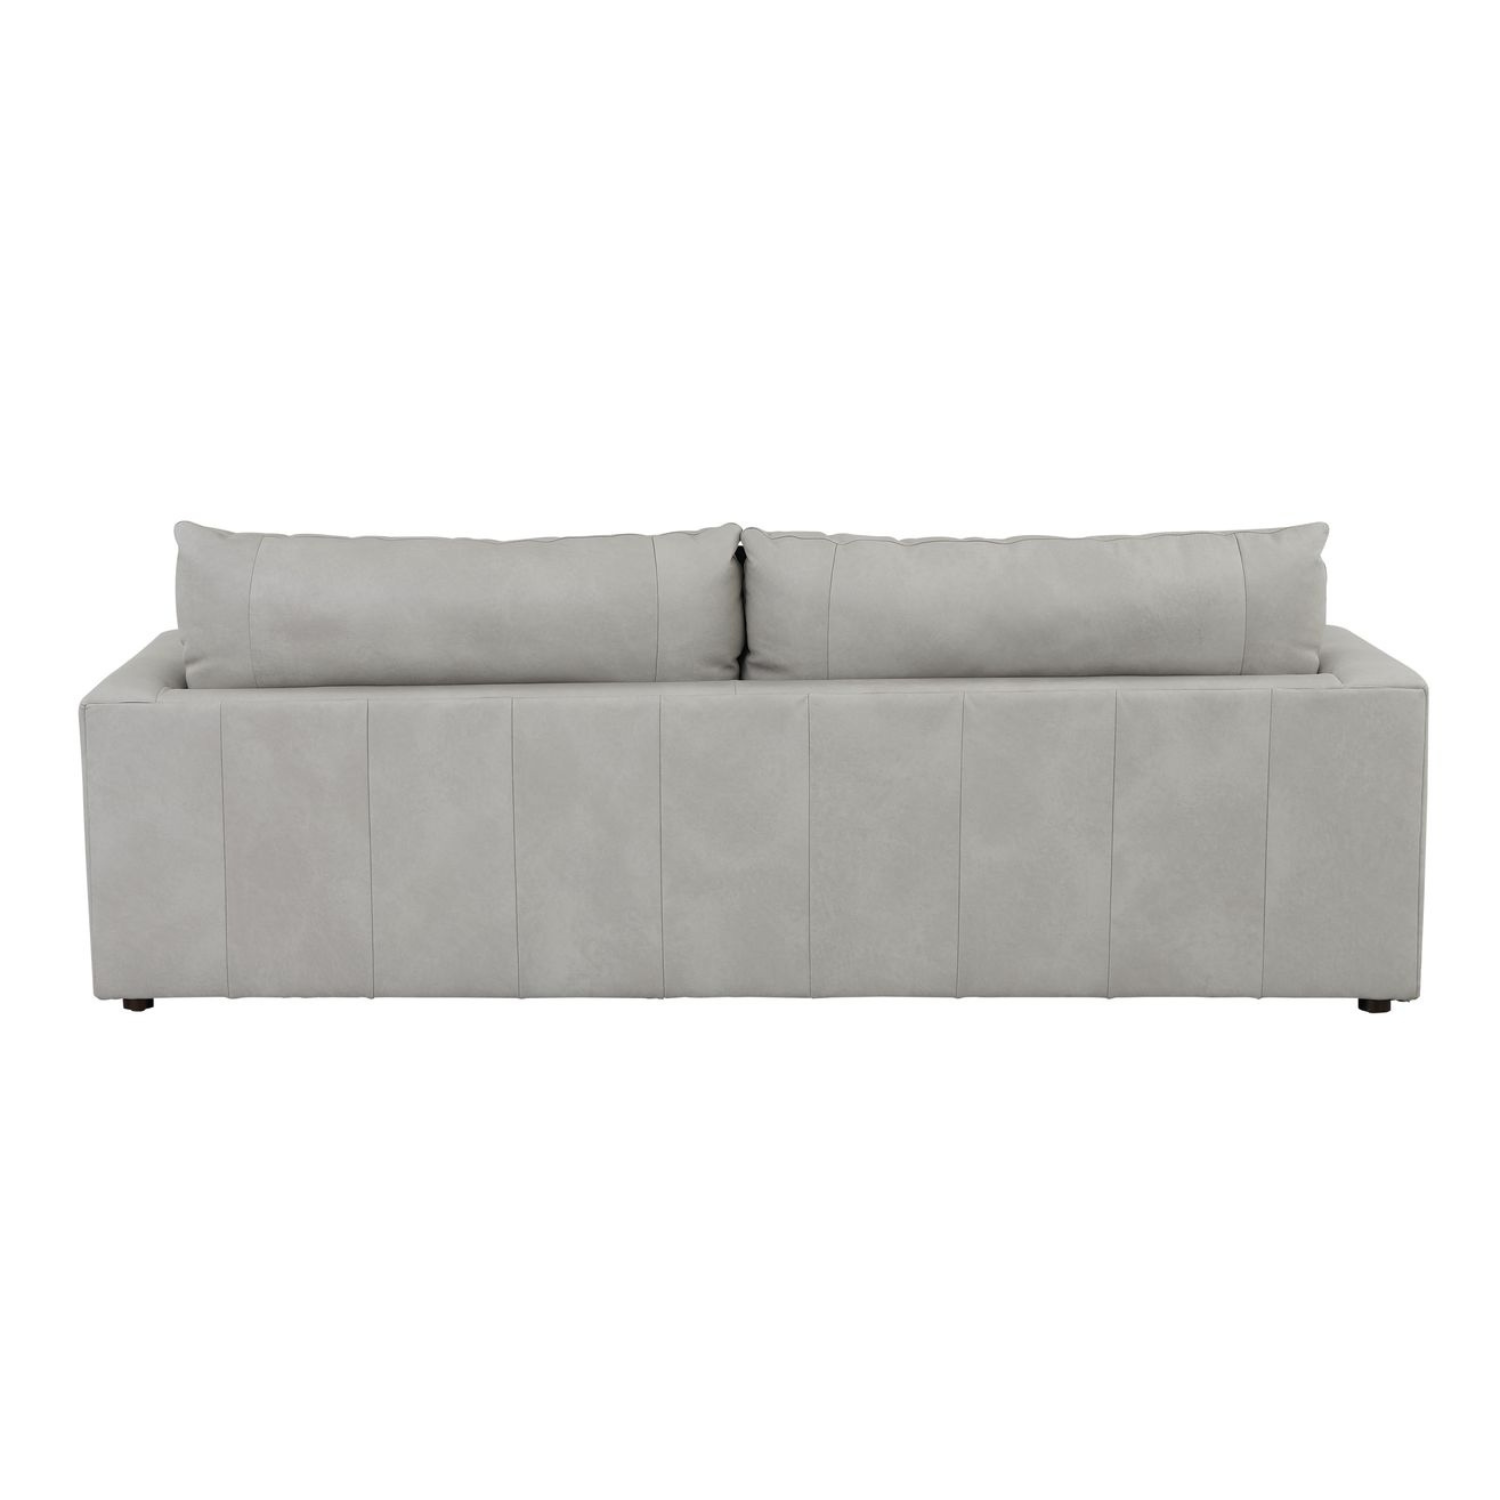 Wilton Leather Sofa